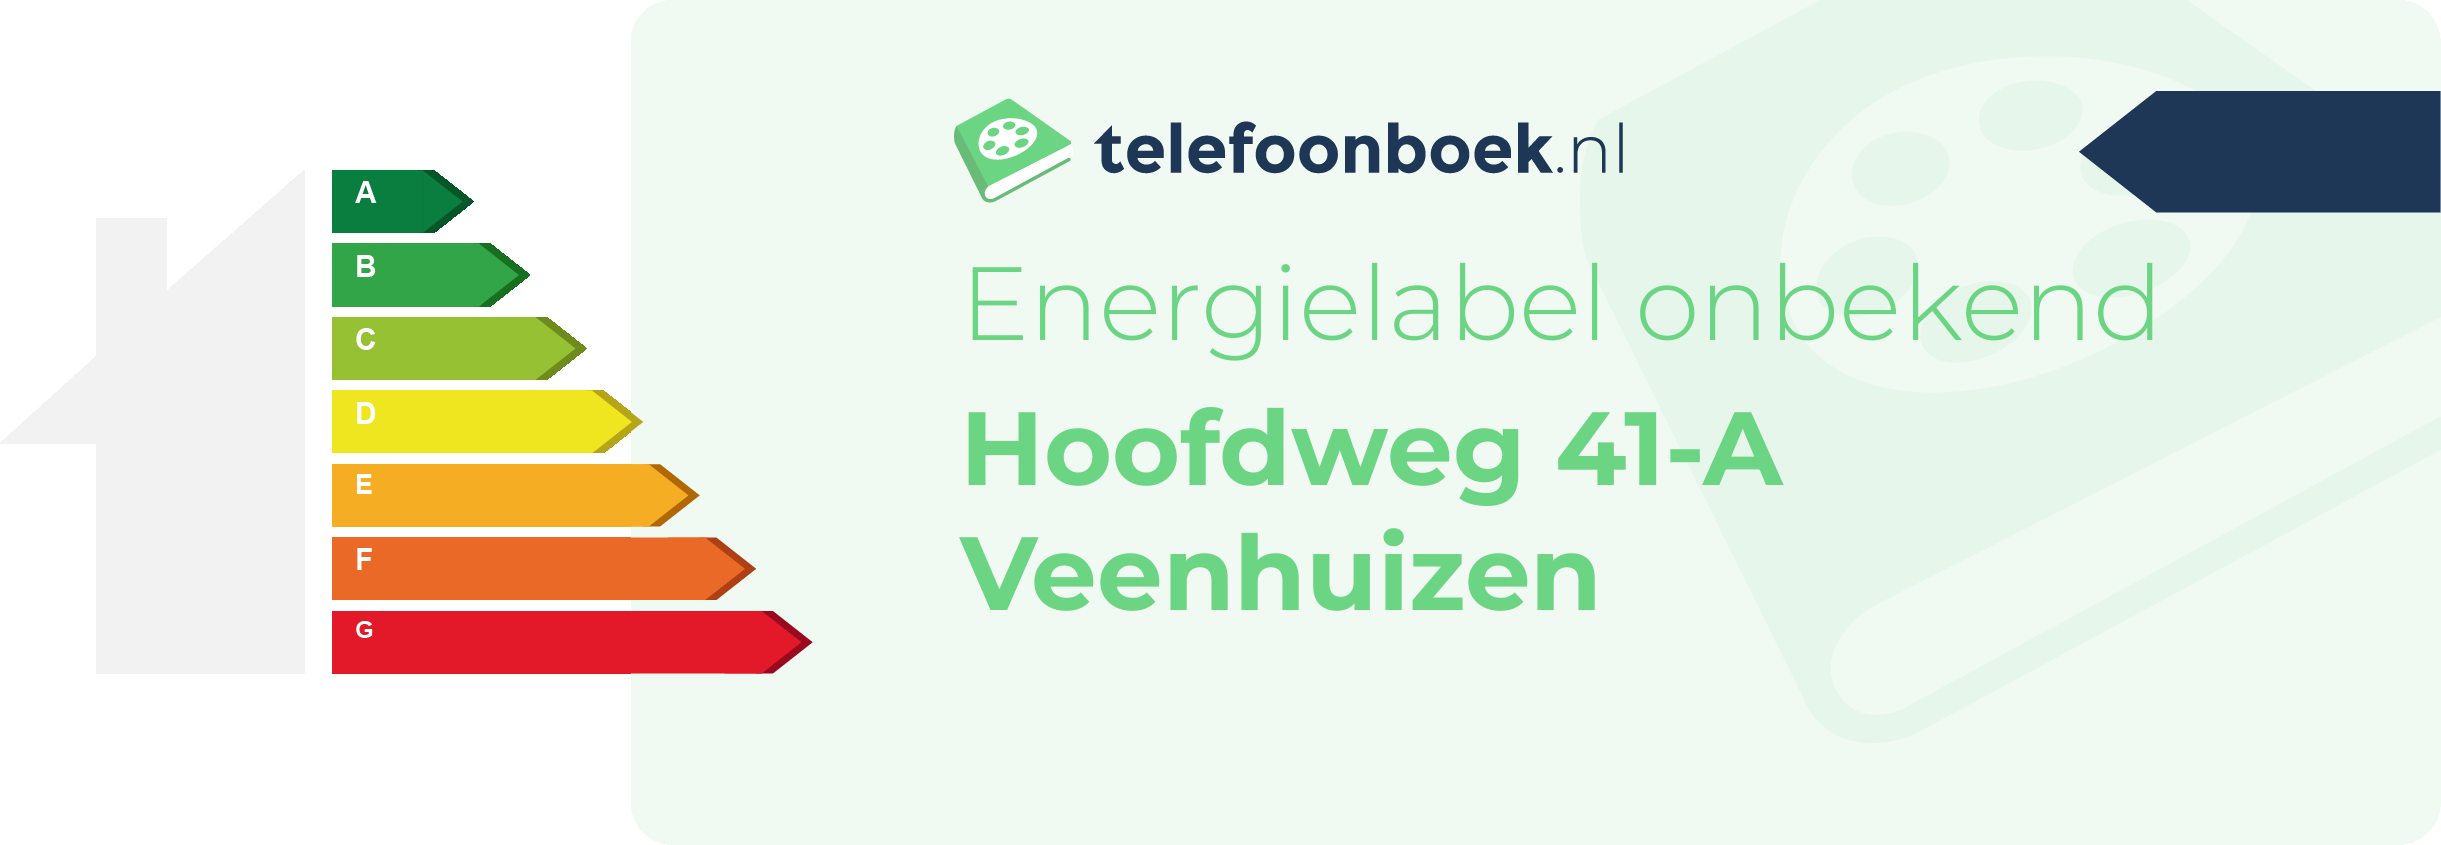 Energielabel Hoofdweg 41-A Veenhuizen